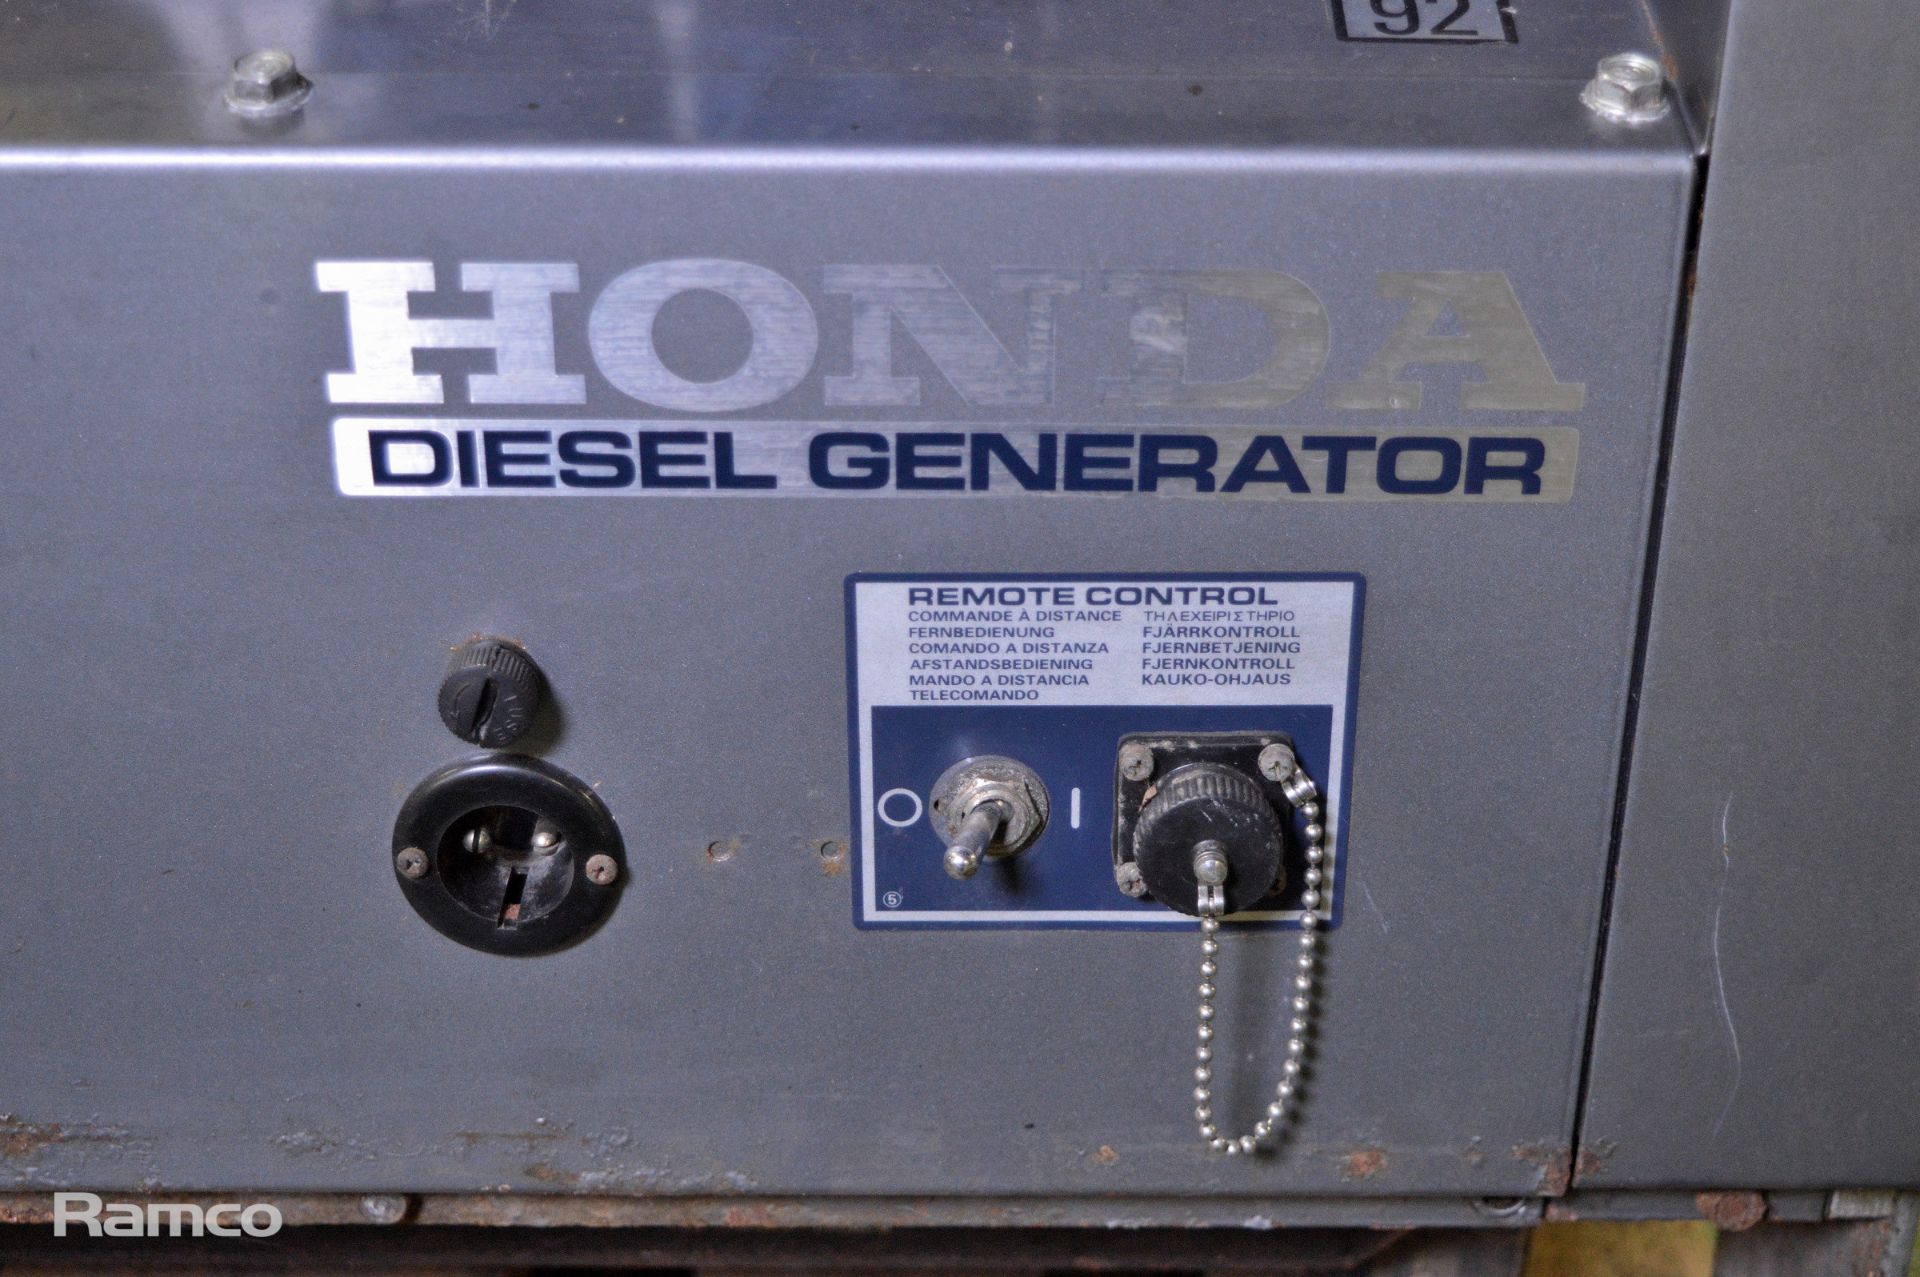 Honda EX 4D silent diesel generator - 3.7kW - 1997 - 50hz - 115V / 230V - 32.2A / 16.1A - - Image 6 of 11